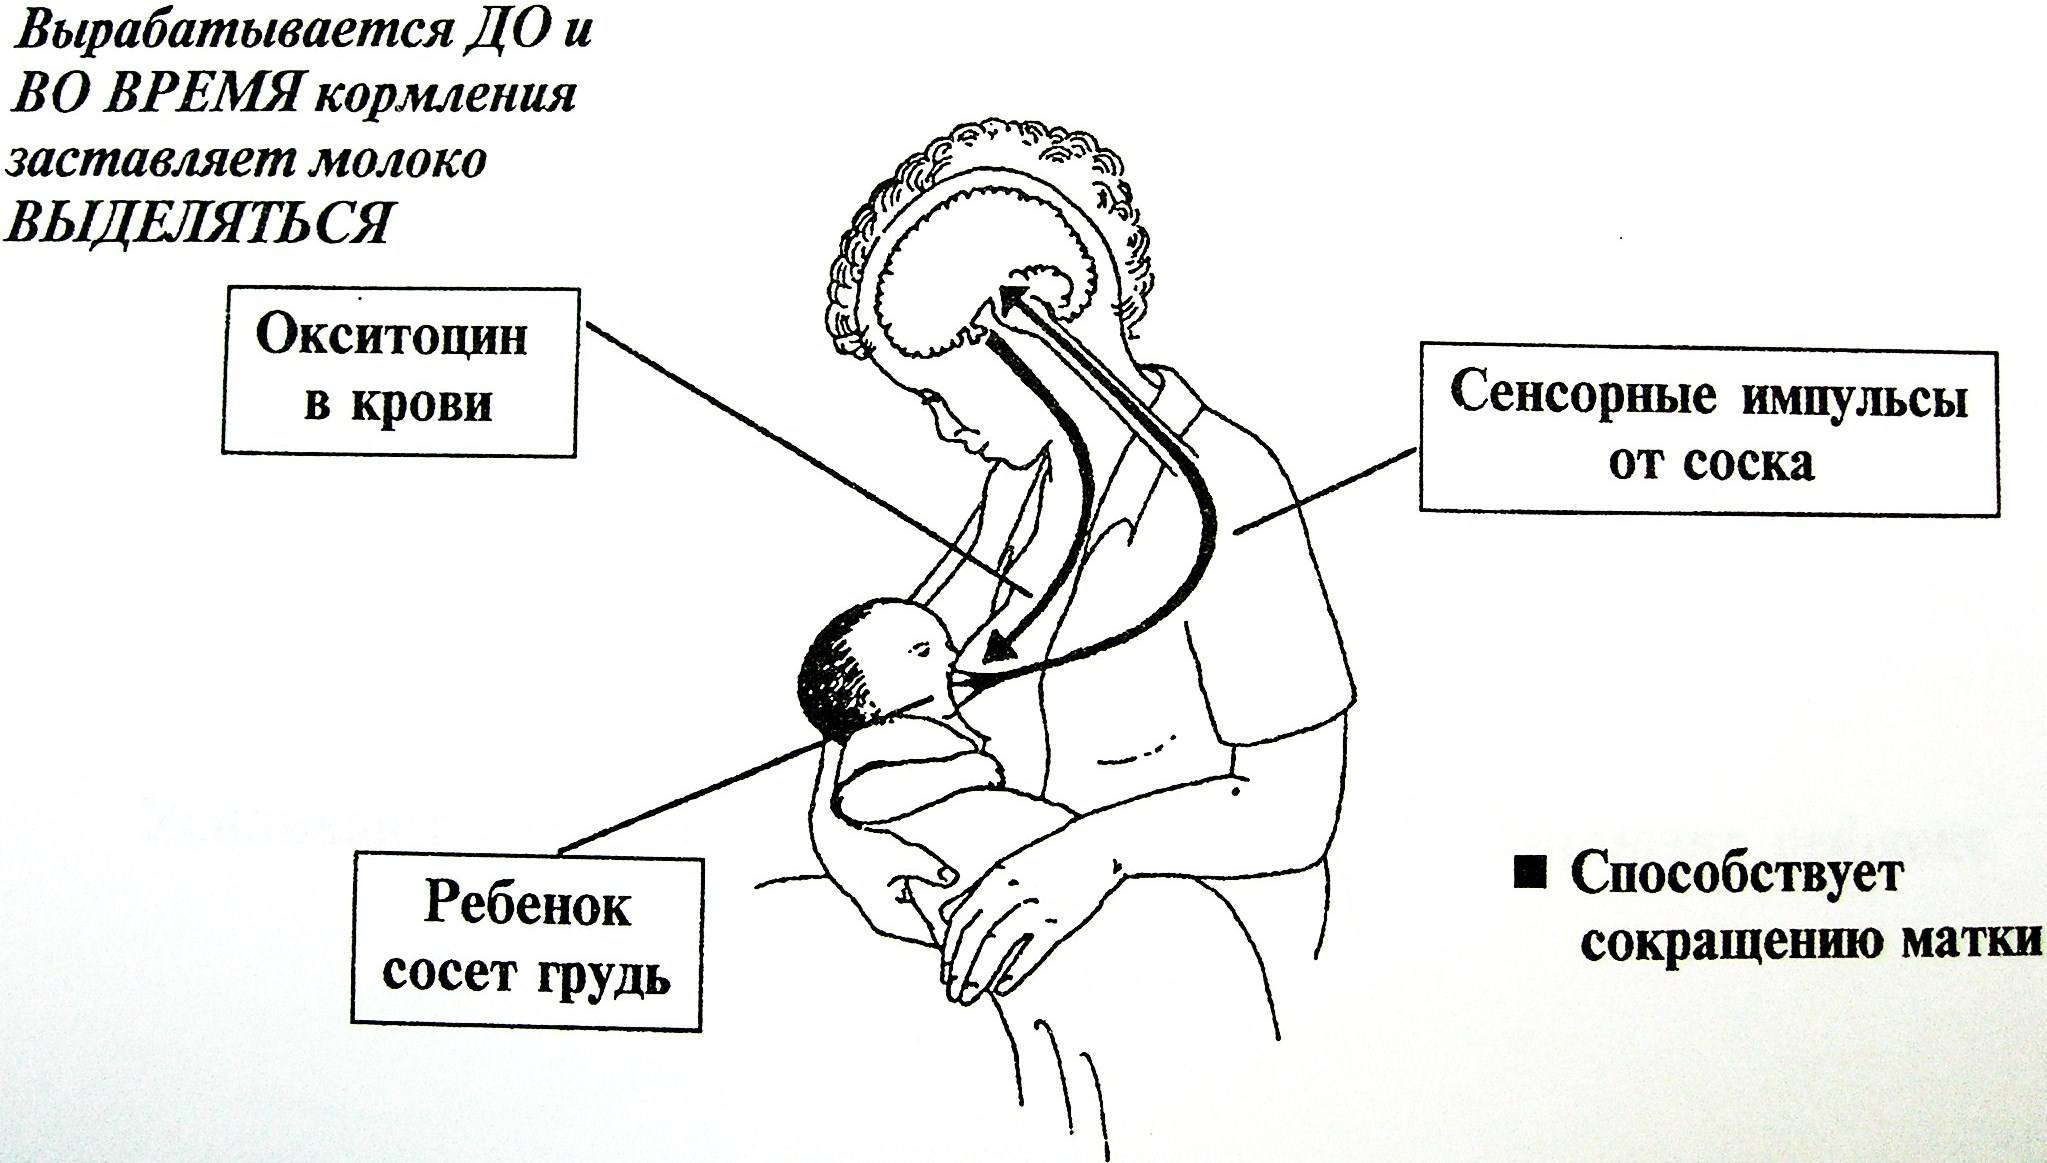 Пролактин молоко. Схема рефлекса окситоцина и пролактина. Механизм выделения грудного молока. Механизм сосания грудного молока ребенком. Рефлекс пролактина и окситоцина.